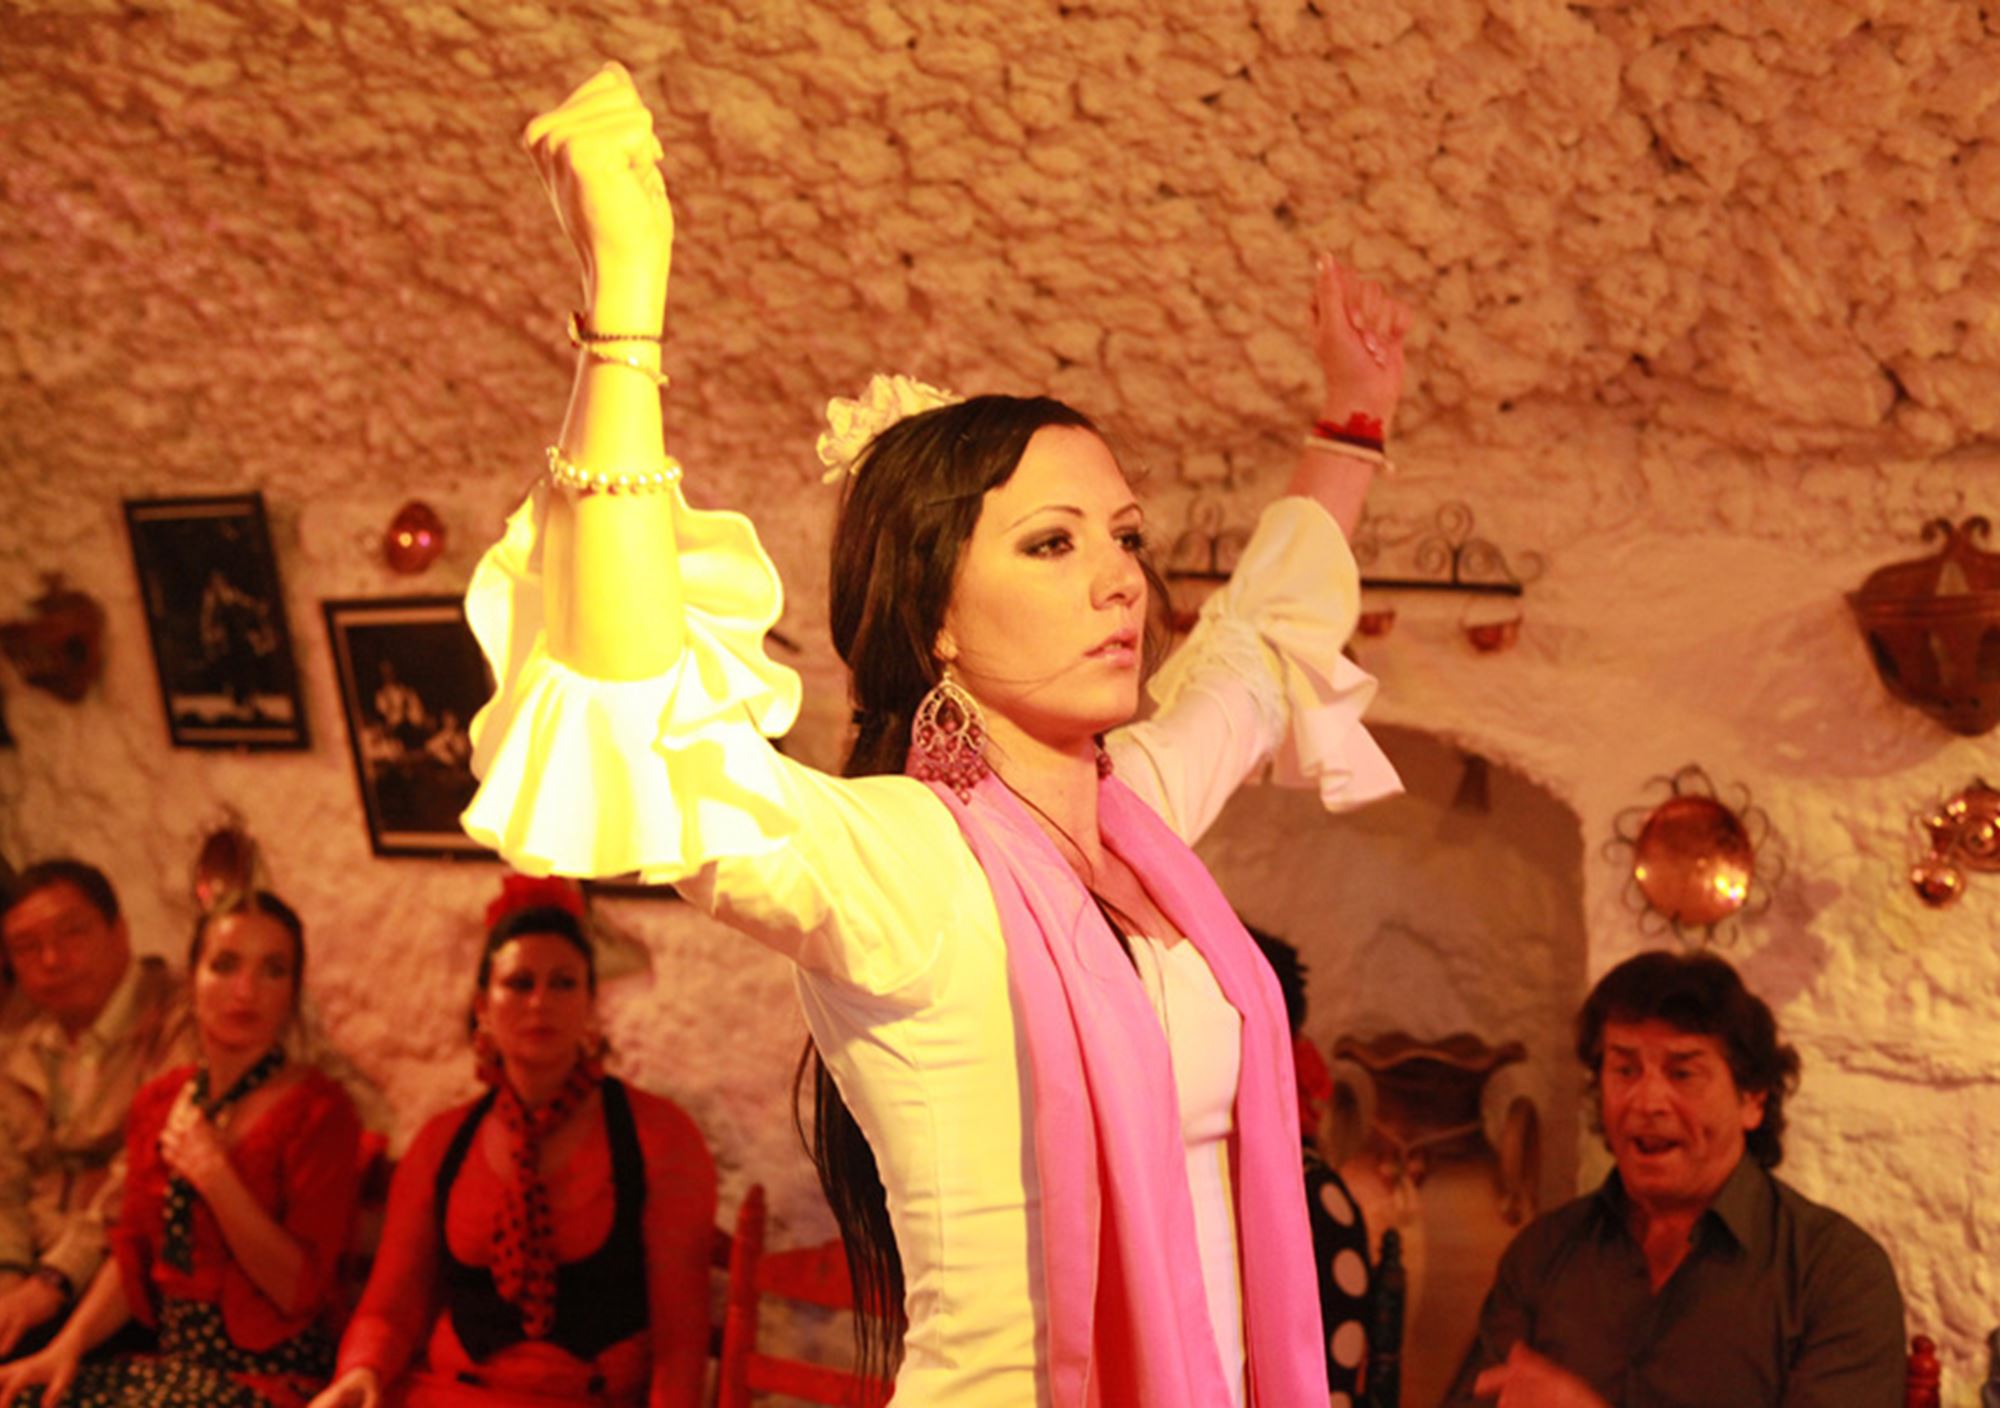 Höhle grotte show tickets tablao Flamenco show Zambra Cuevas Los Tarantos Granada